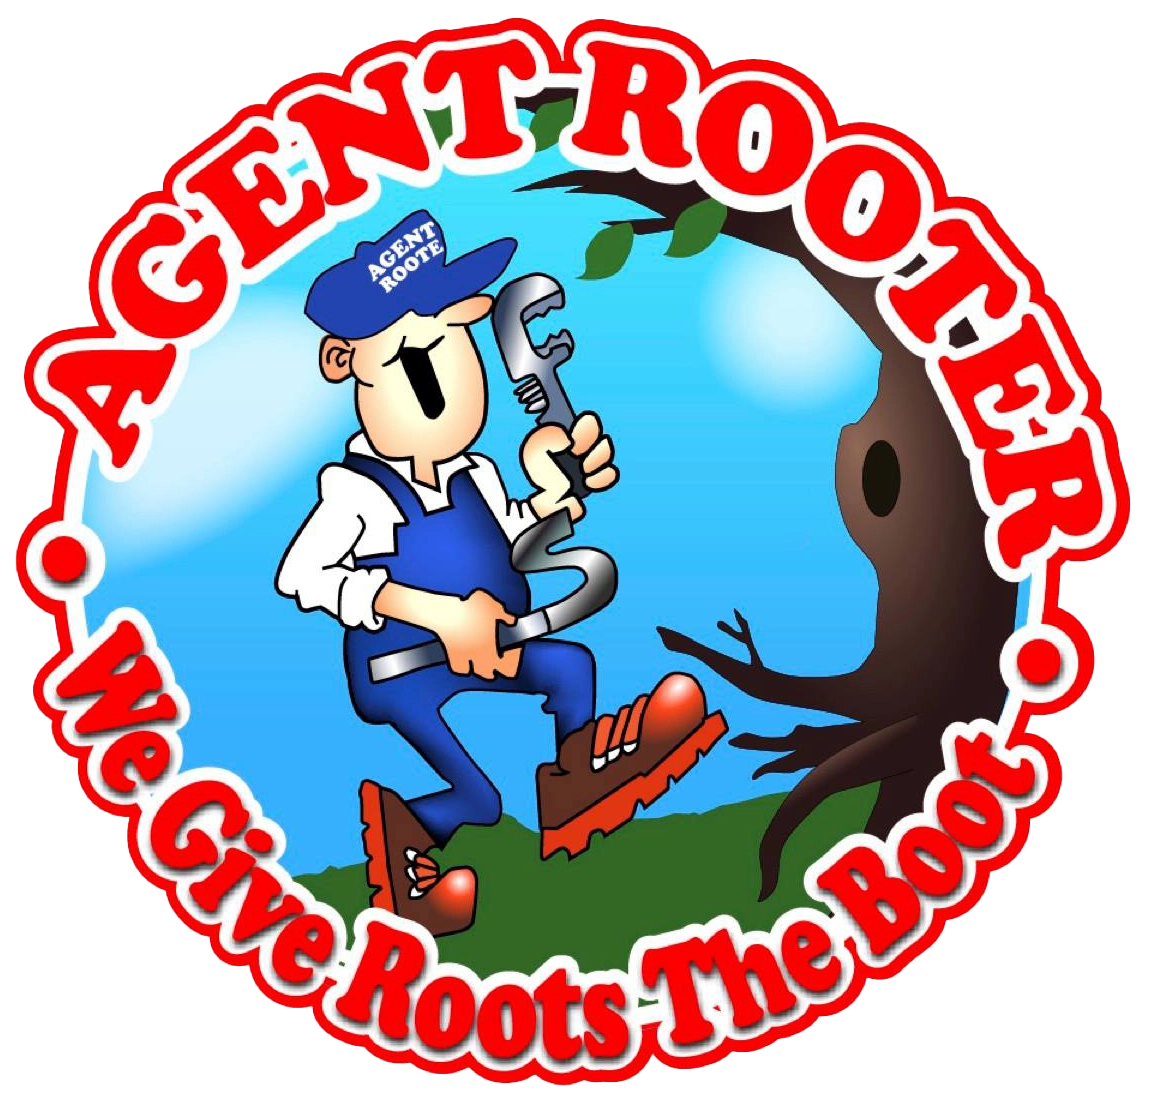 Agent Rooter Plumbing